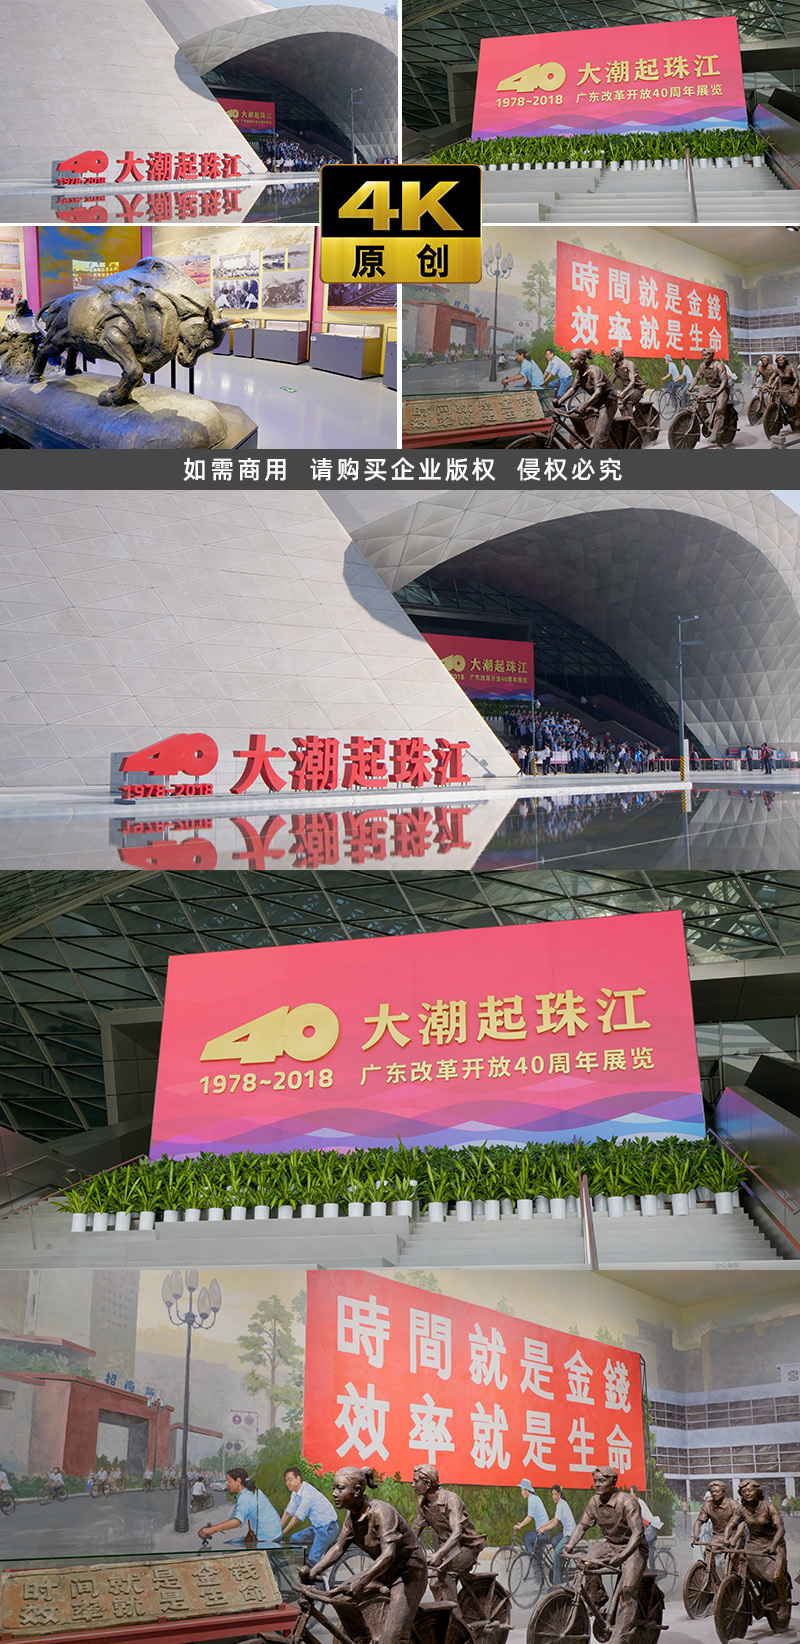 4K 深圳城市素材 改革开放 博物馆